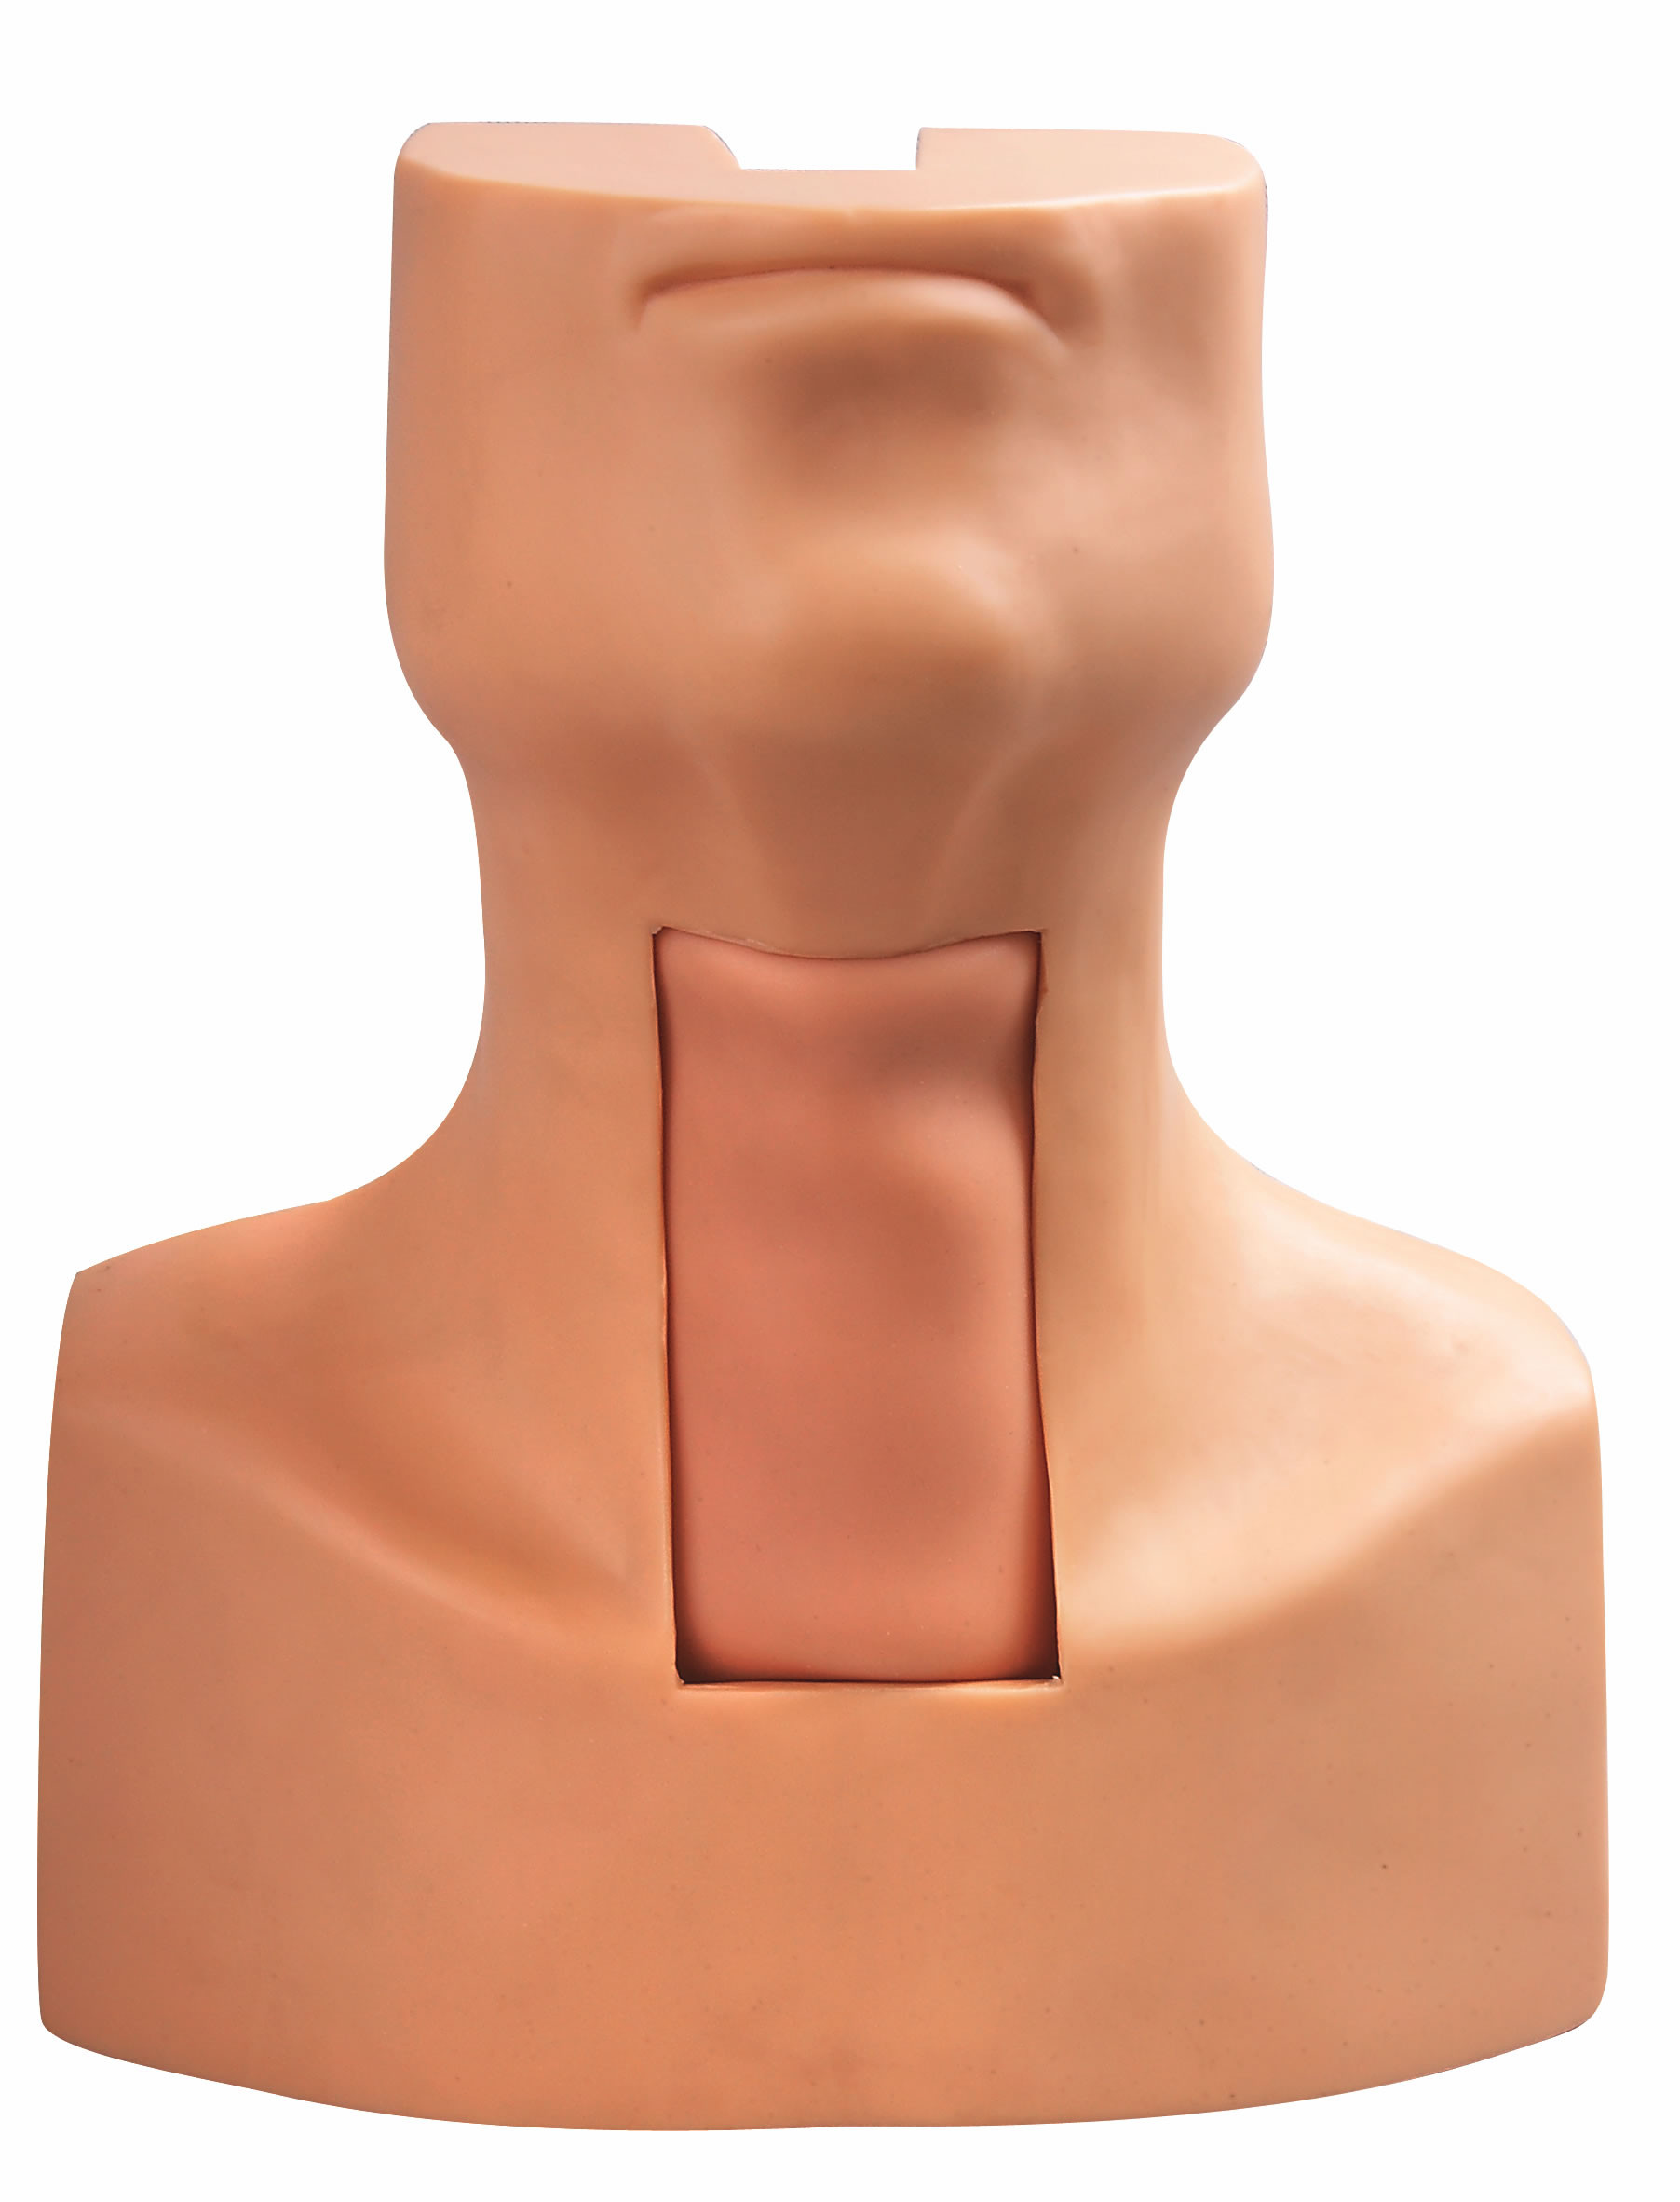 Modèle d'intubation de piqûre de Tracheostomy avec la peau simulée de trachée et de cou pour la formation